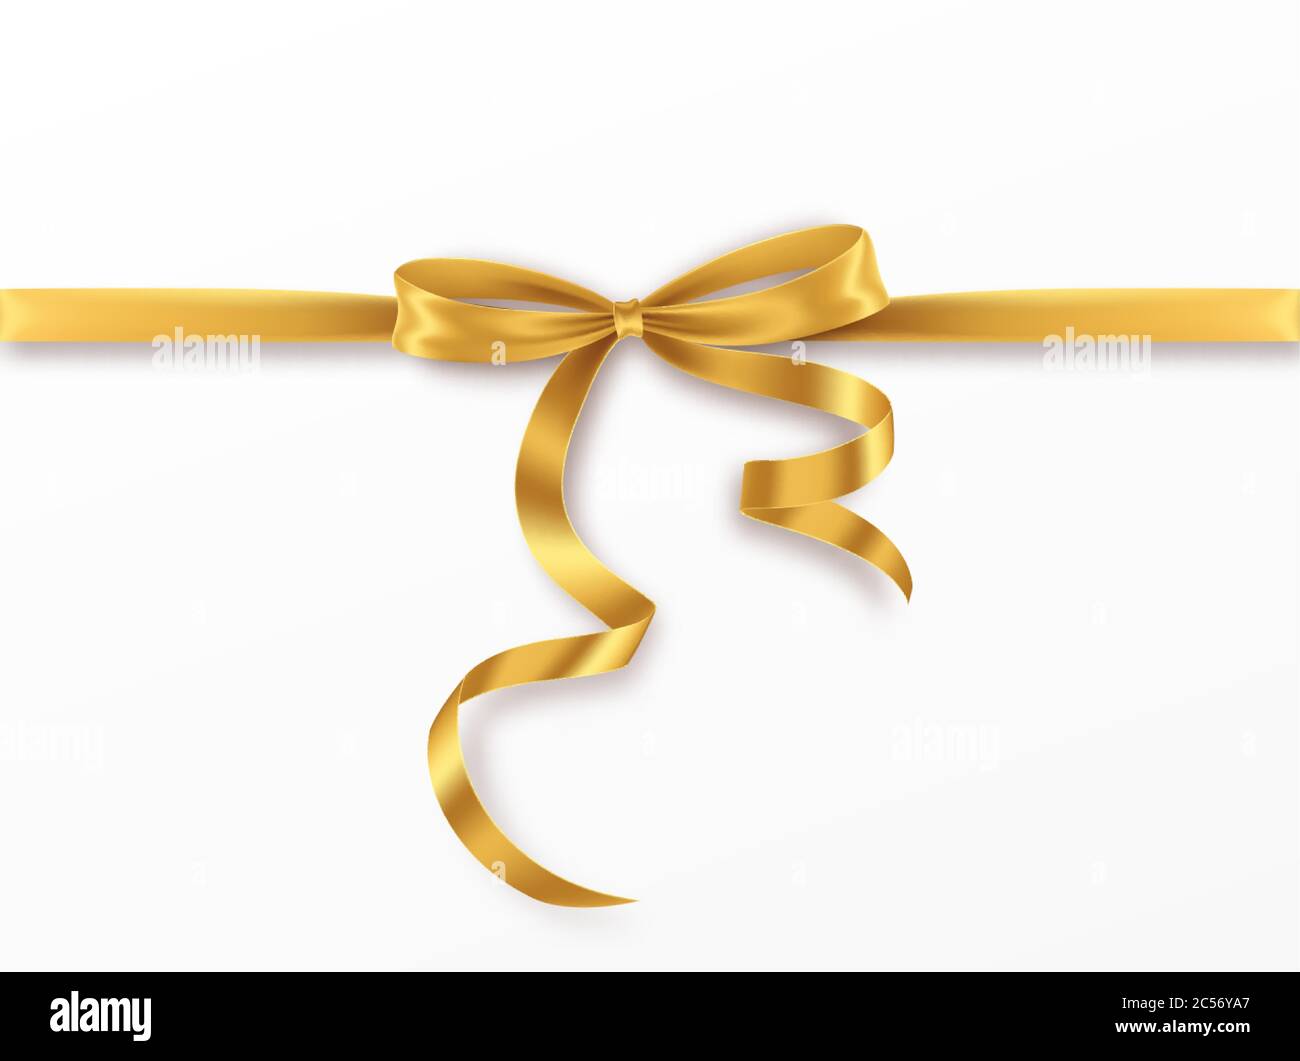 Golden Bow e nastro su sfondo bianco. Arco d'oro realistico per il design della decorazione cornice per le vacanze, bordo. Illustrazione vettoriale Illustrazione Vettoriale